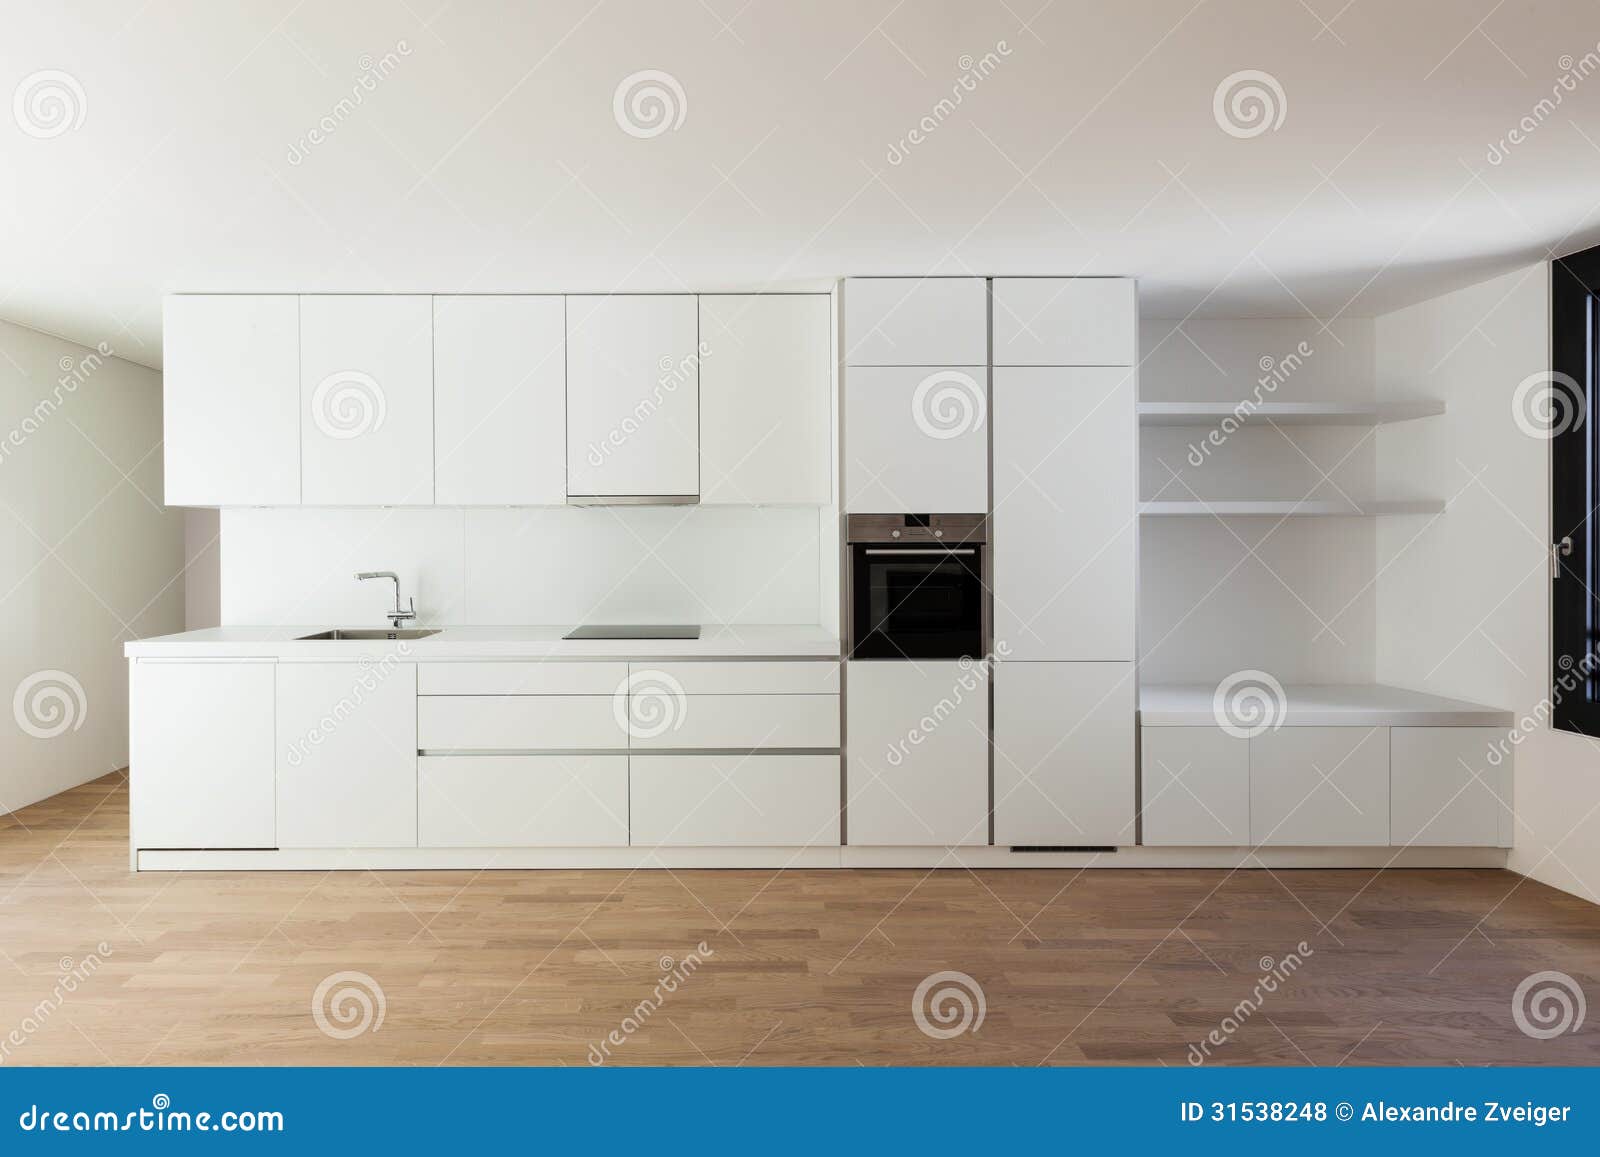 Cucina bianca moderna fotografia stock immagine di for Casa moderna cucina